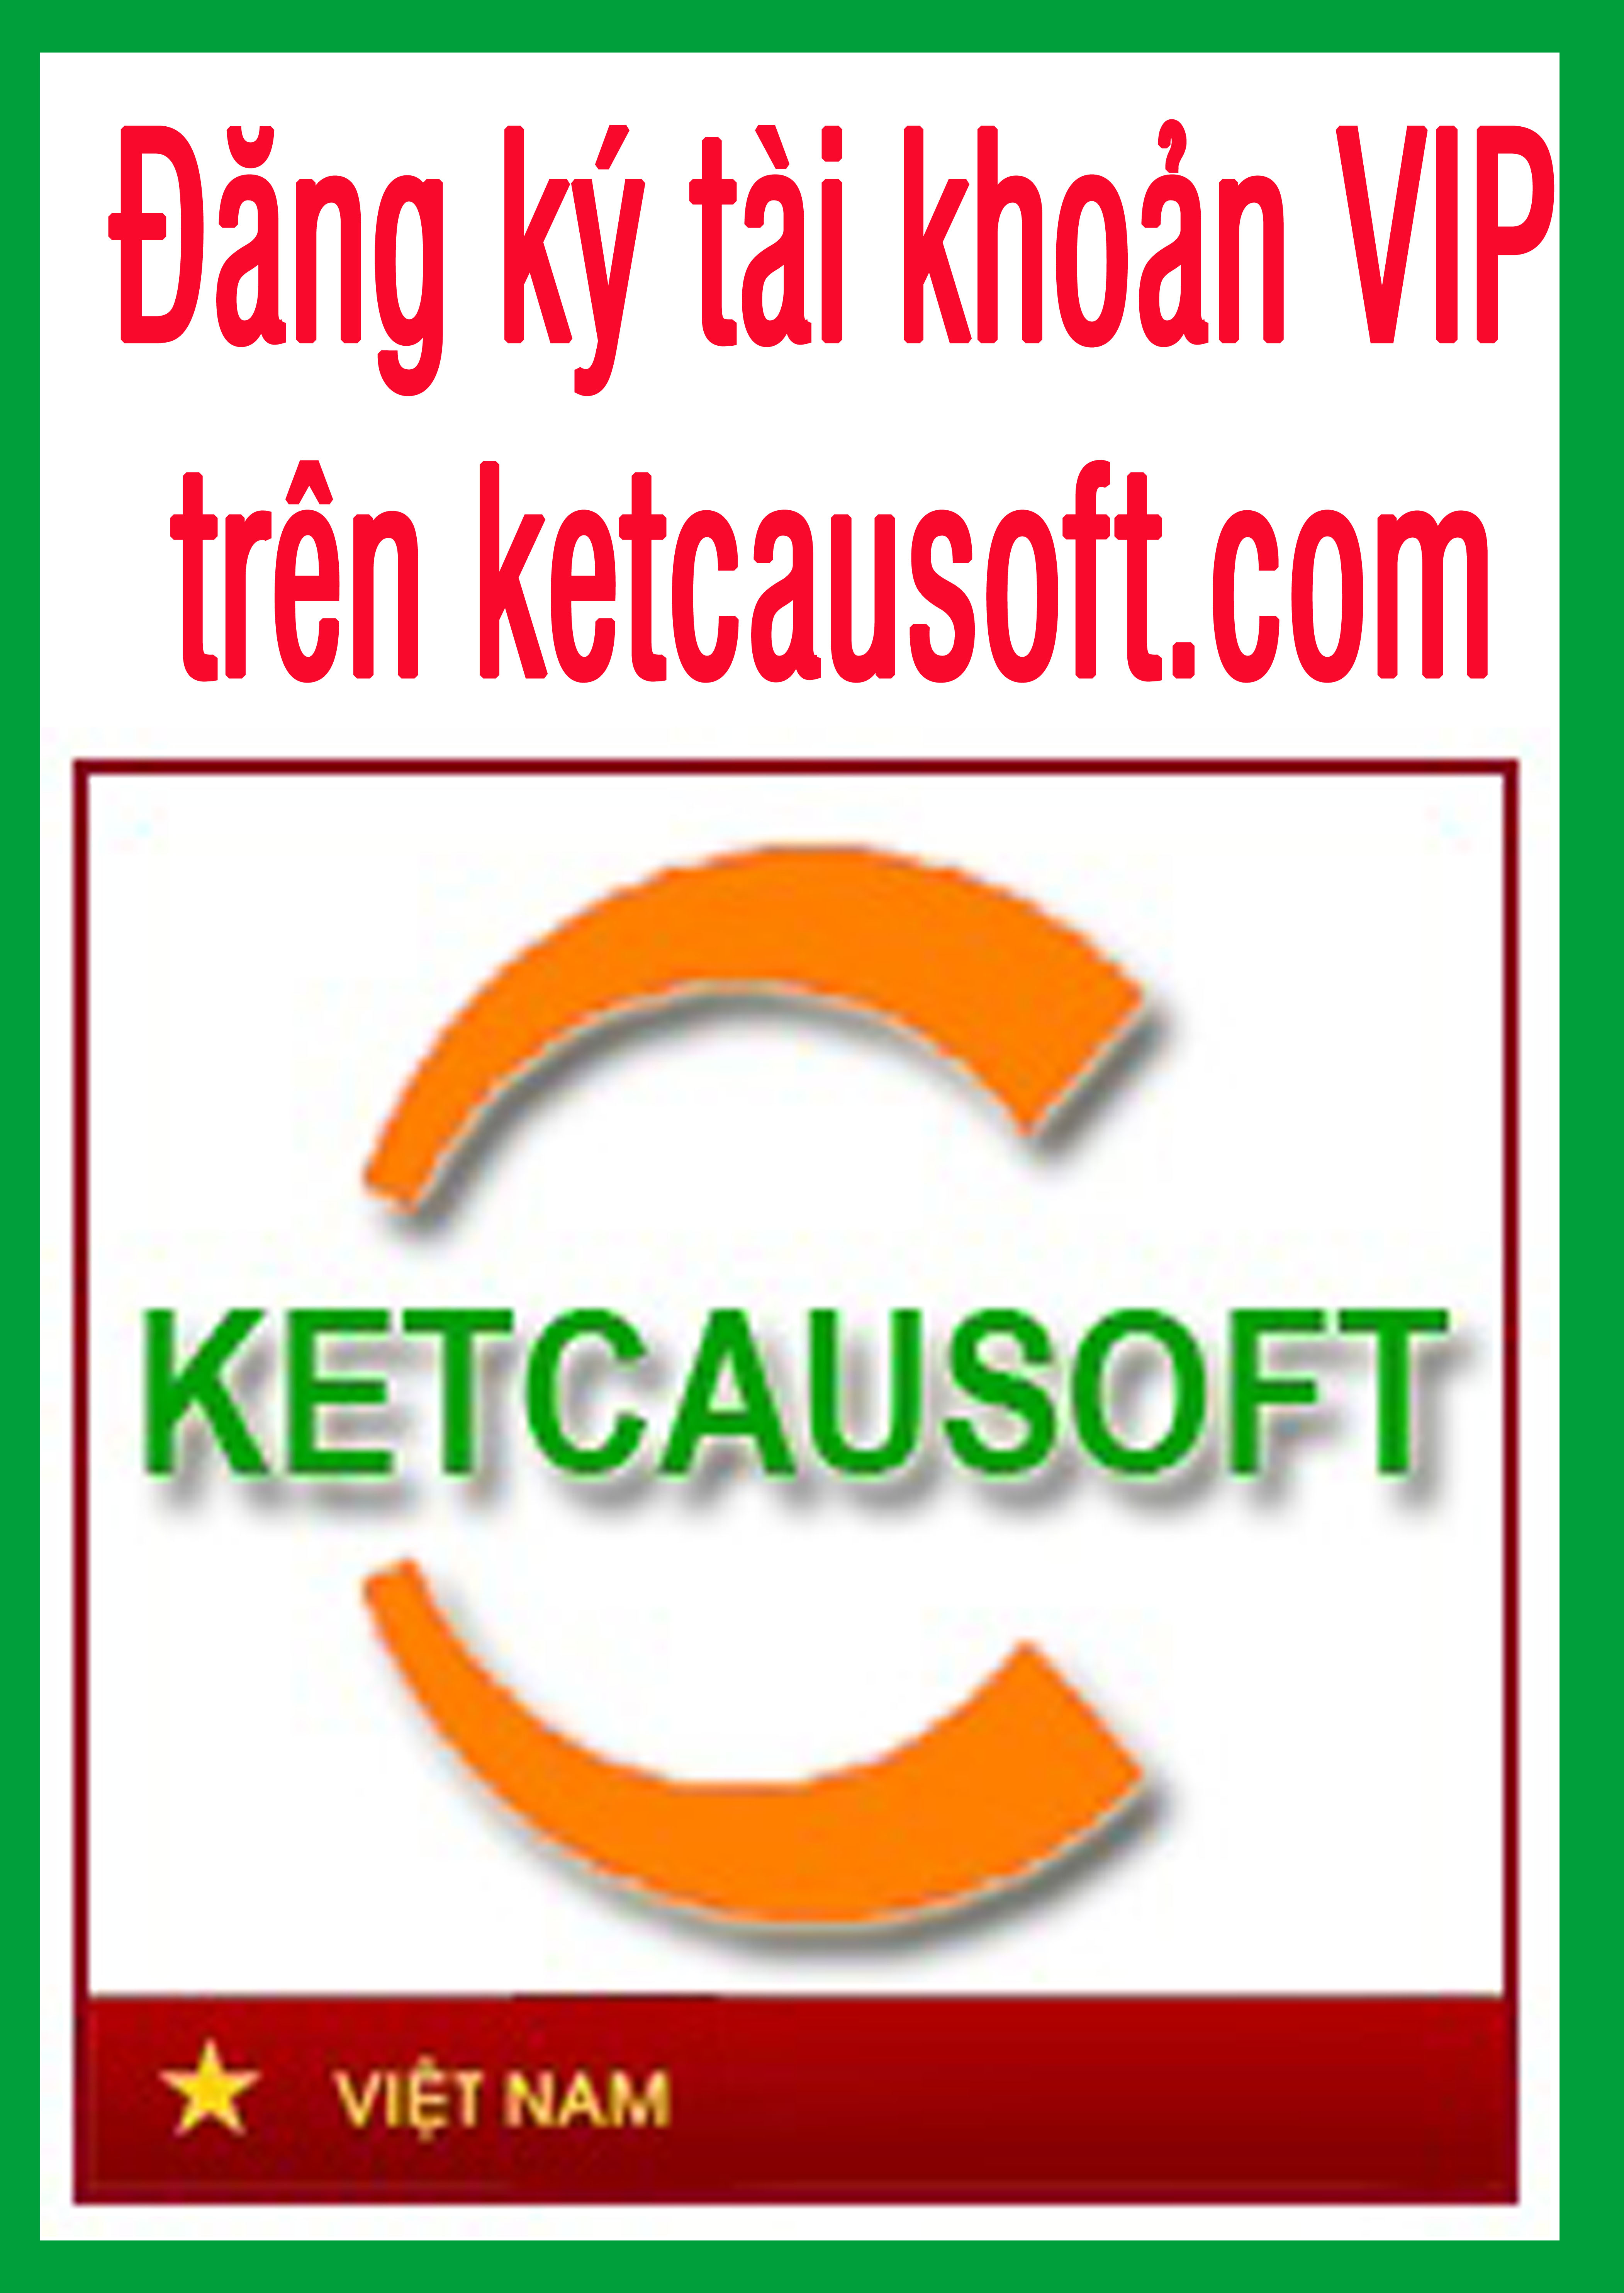 Đăng ký tài khoản VIP của Ketcausoft.com